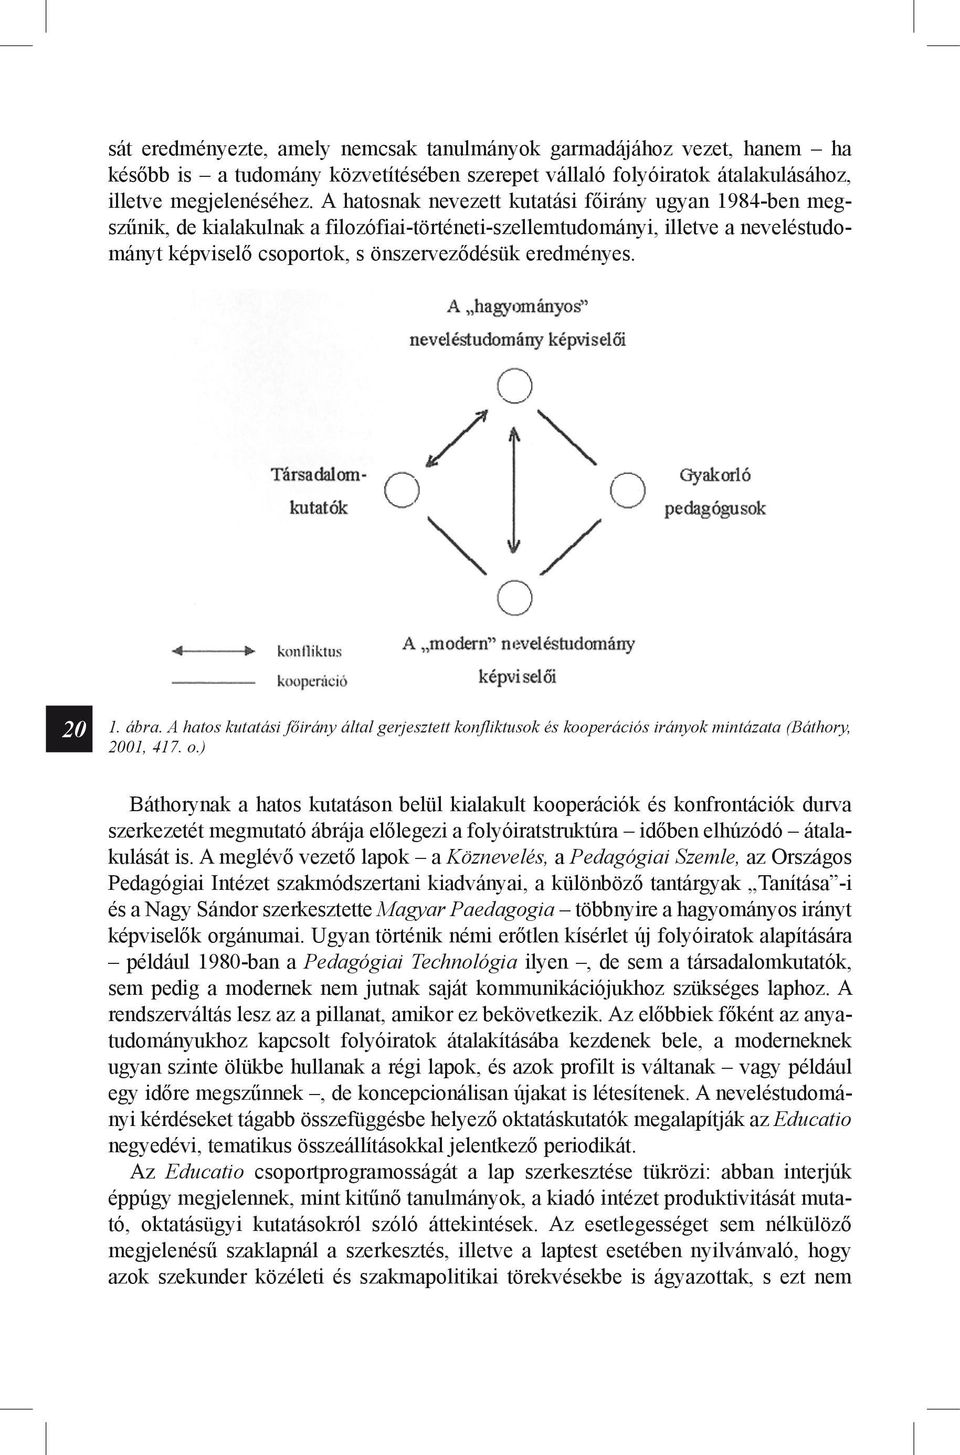 20 1. ábra. A hatos kutatási főirány által gerjesztett konfliktusok és kooperációs irányok mintázata (Báthory, 2001, 417. o.